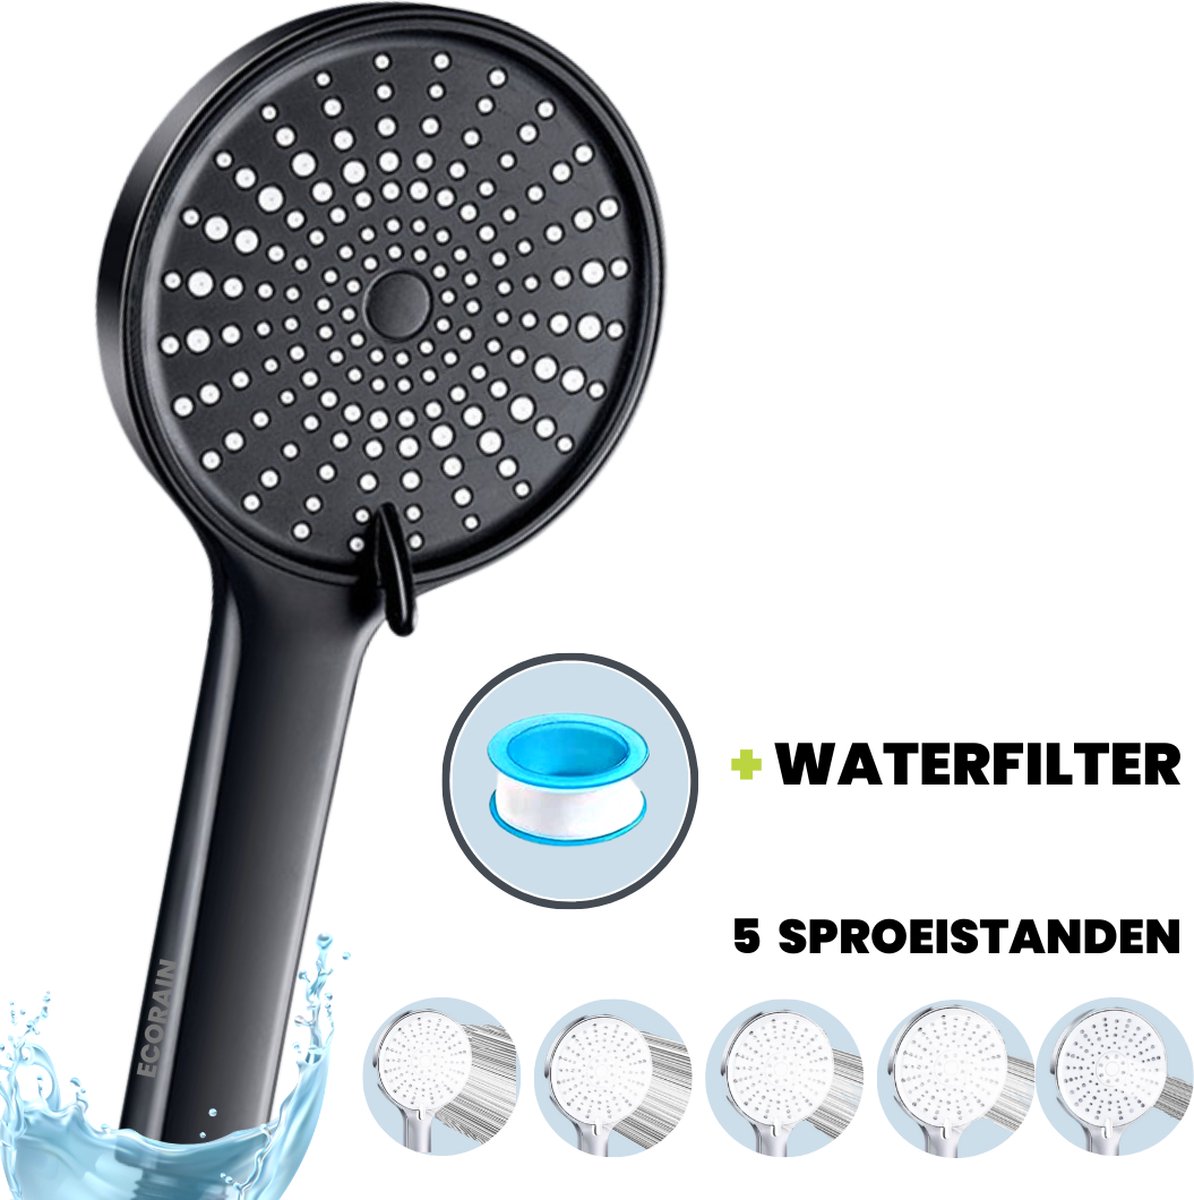 EcoRain™ Waterbesparende Douchekop Mark met WATERFILTER - 50% Waterbesparend - Regendouche - 5 Sproeistanden - Hoge Druk - Betere Huid - Handdouche - Luxe Moderne Douchekop - Hoge Kwaliteit - Zwart